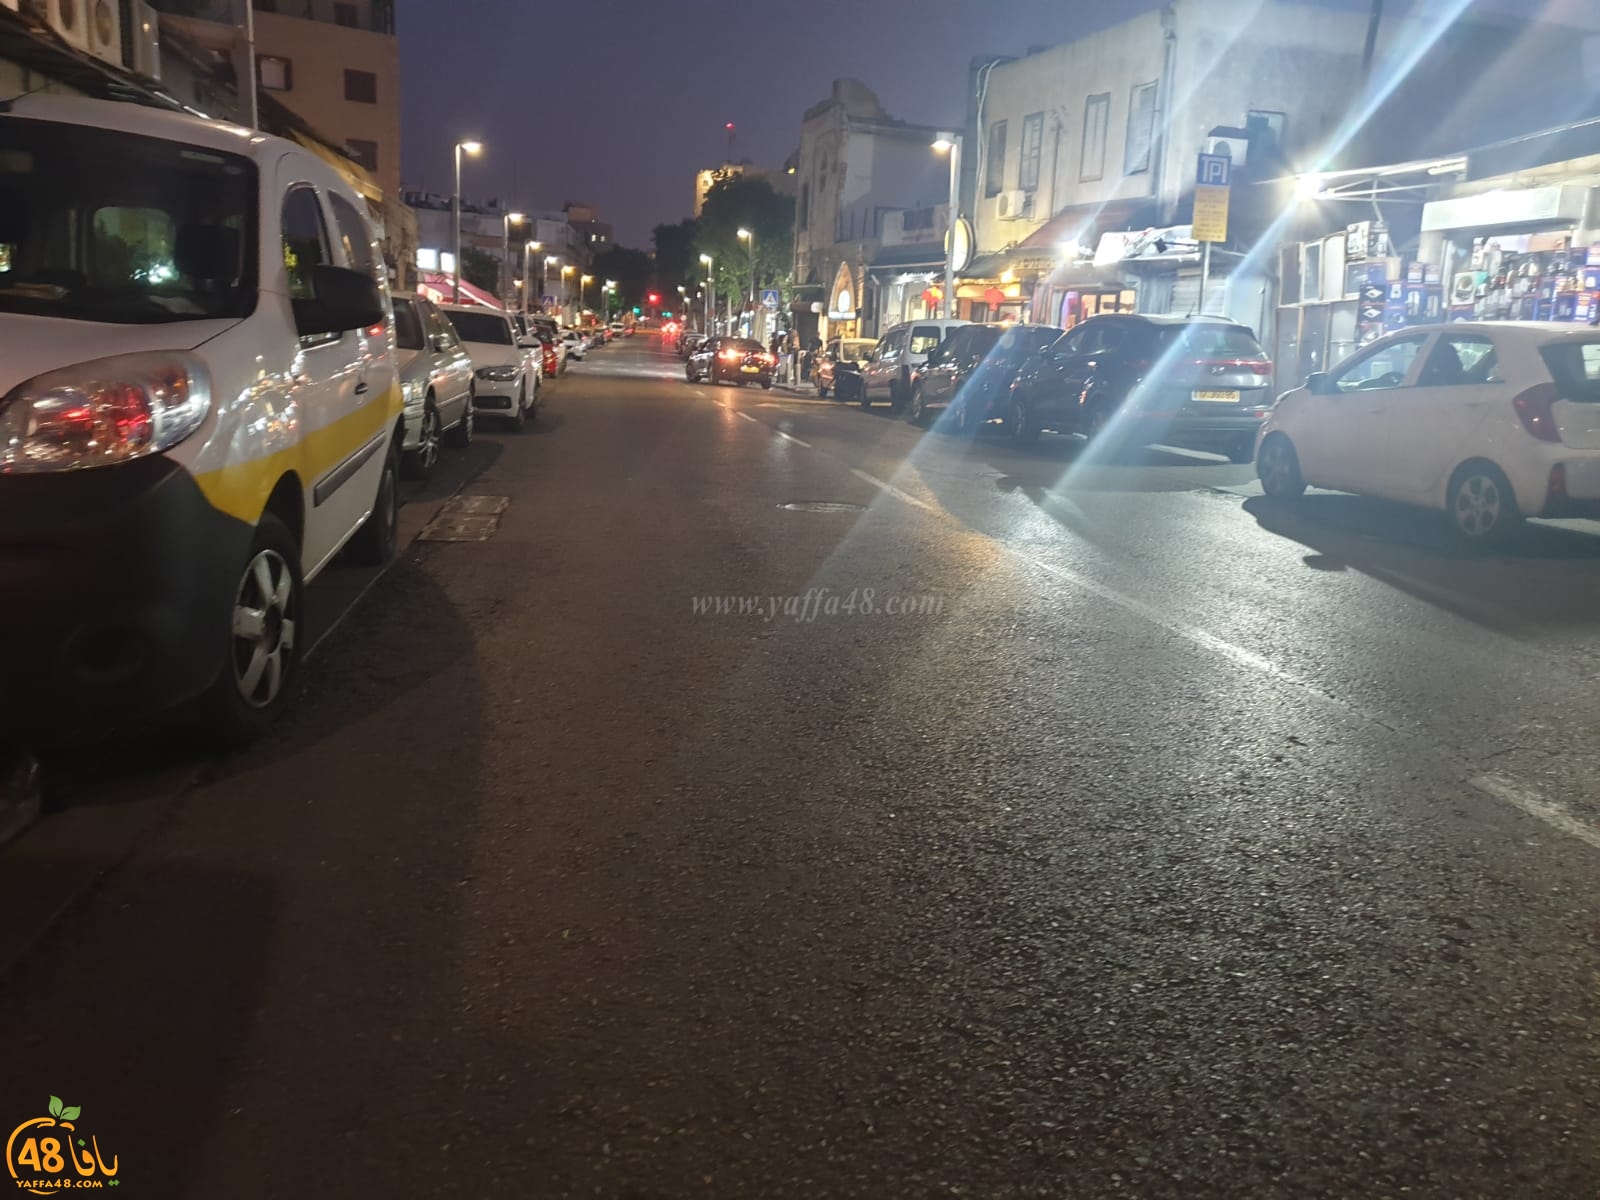  بالصور: شلل يُصيب الحركة التجارية في مدينة يافا اثر توتر الأوضاع الأمنية 